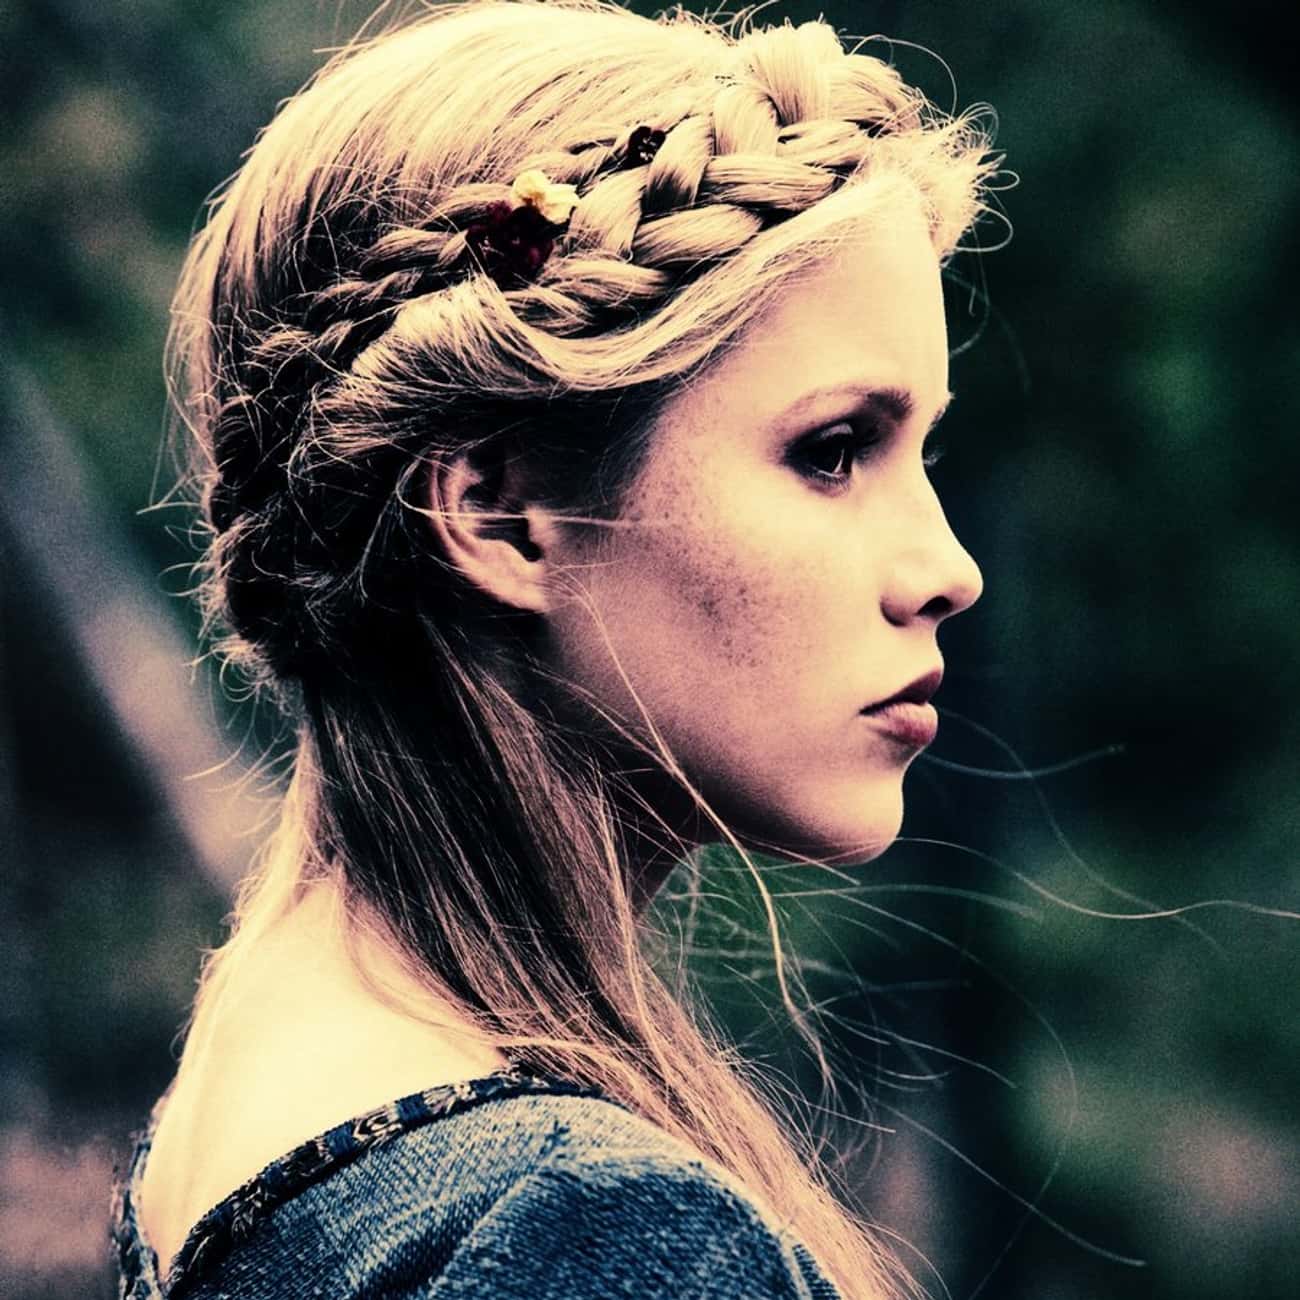 Rebekah